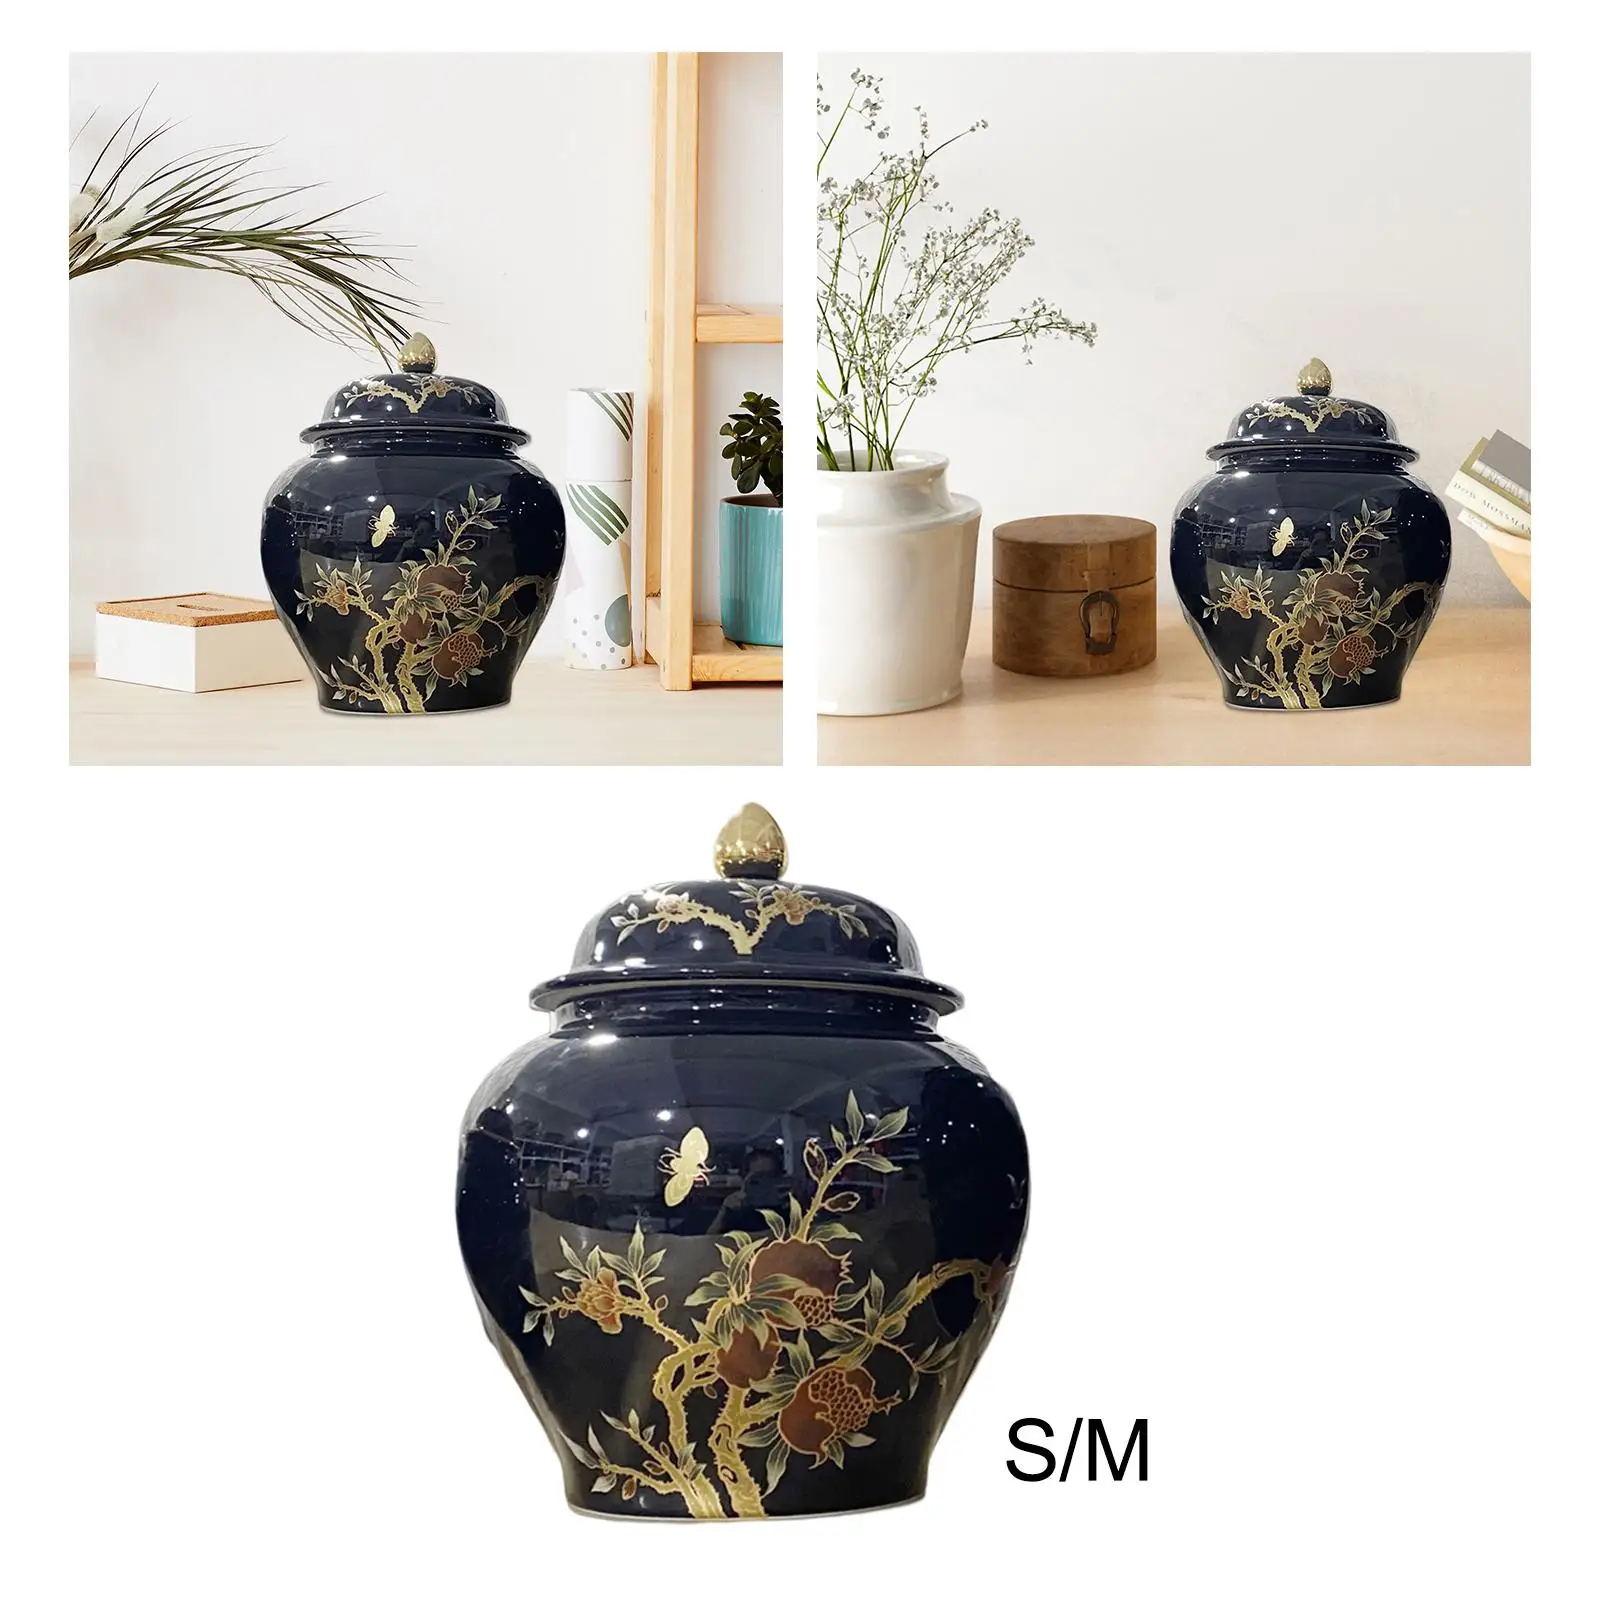 Porcelain Ginger Jar Organizer Storage Jar Plants Holder Flower Arrangement Ceramic Vase for Garden Home Bookshelf Party Decor